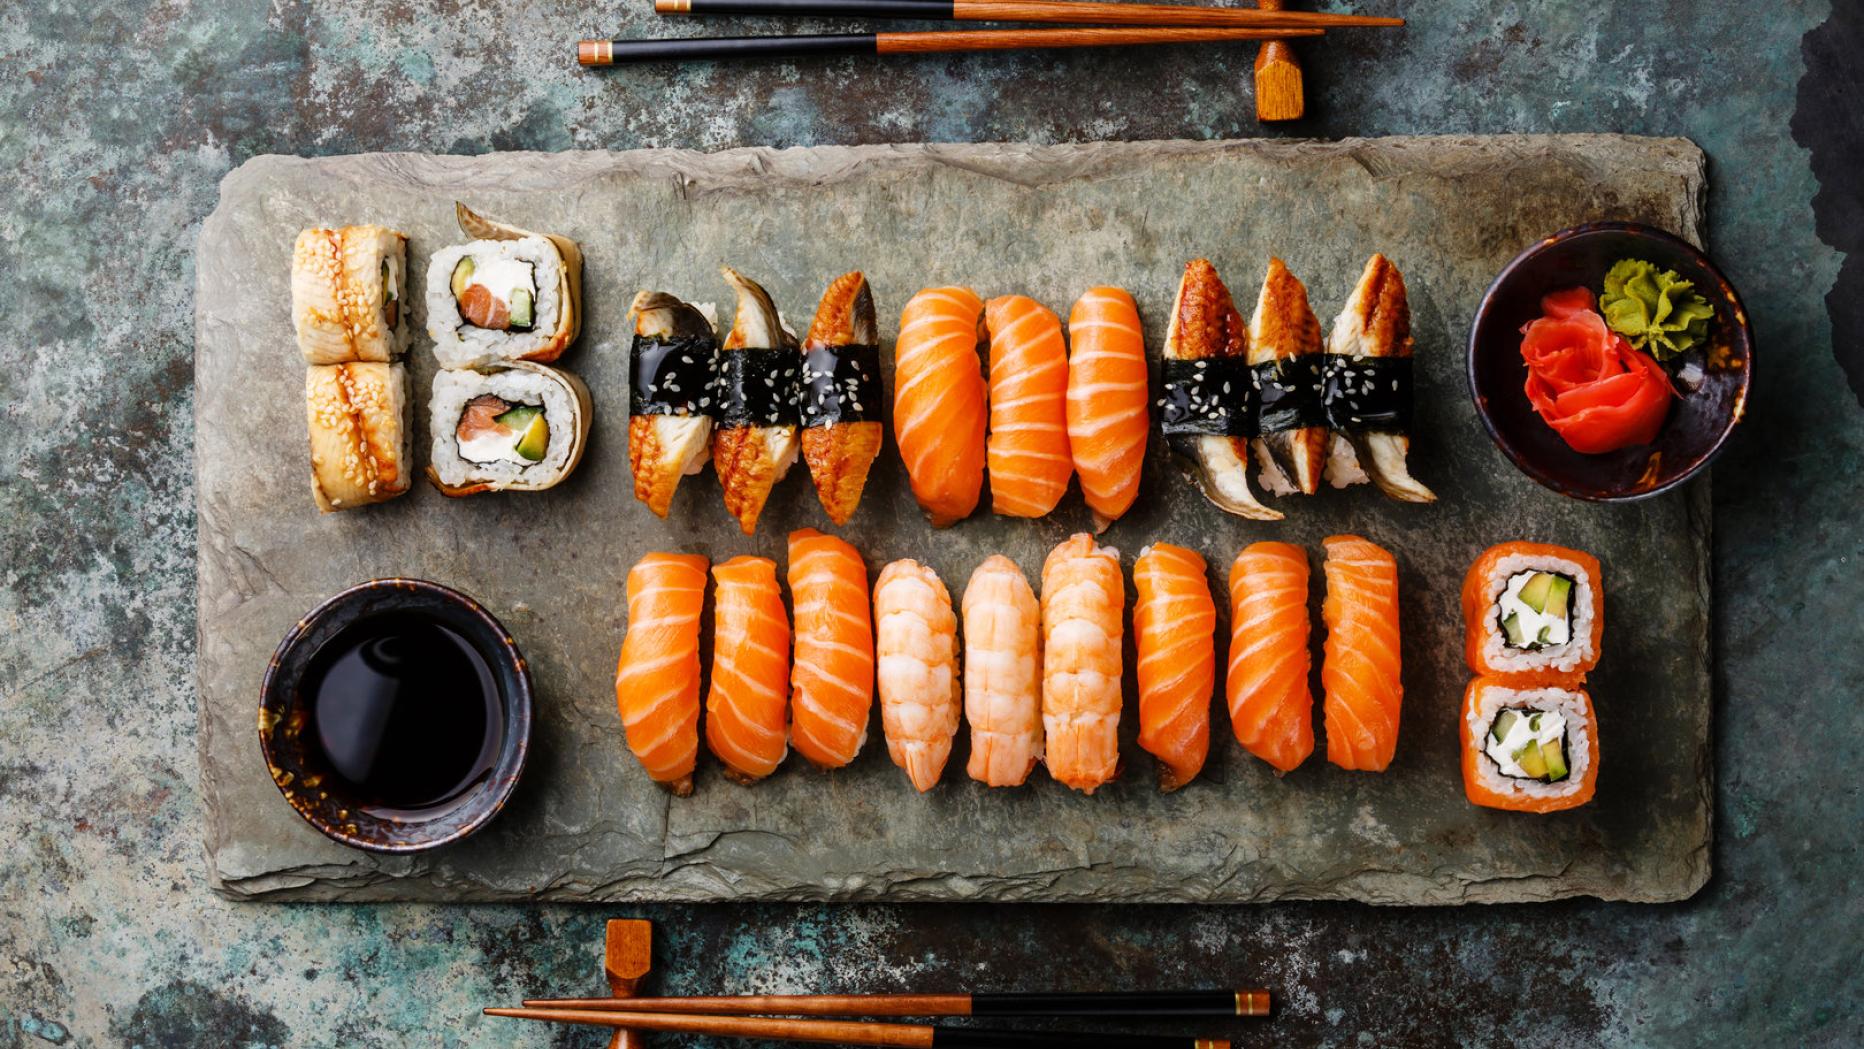 Das Beste Sushi Restaurant Der Welt Verliert Seine Sterne Kurier At